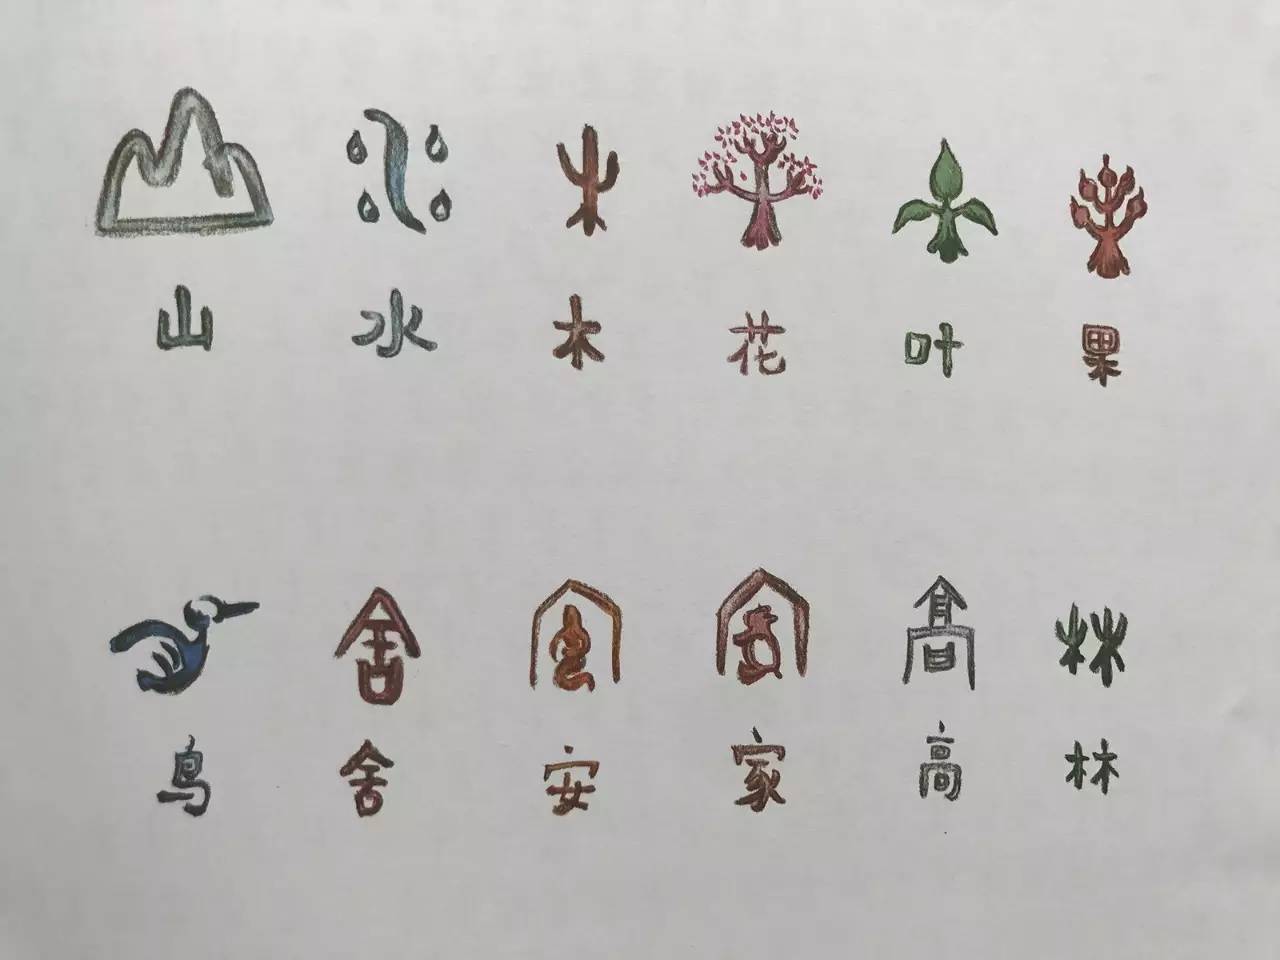 象形字是汉字的基础,但它们的数量不多,在成千上万个汉字中,象形字